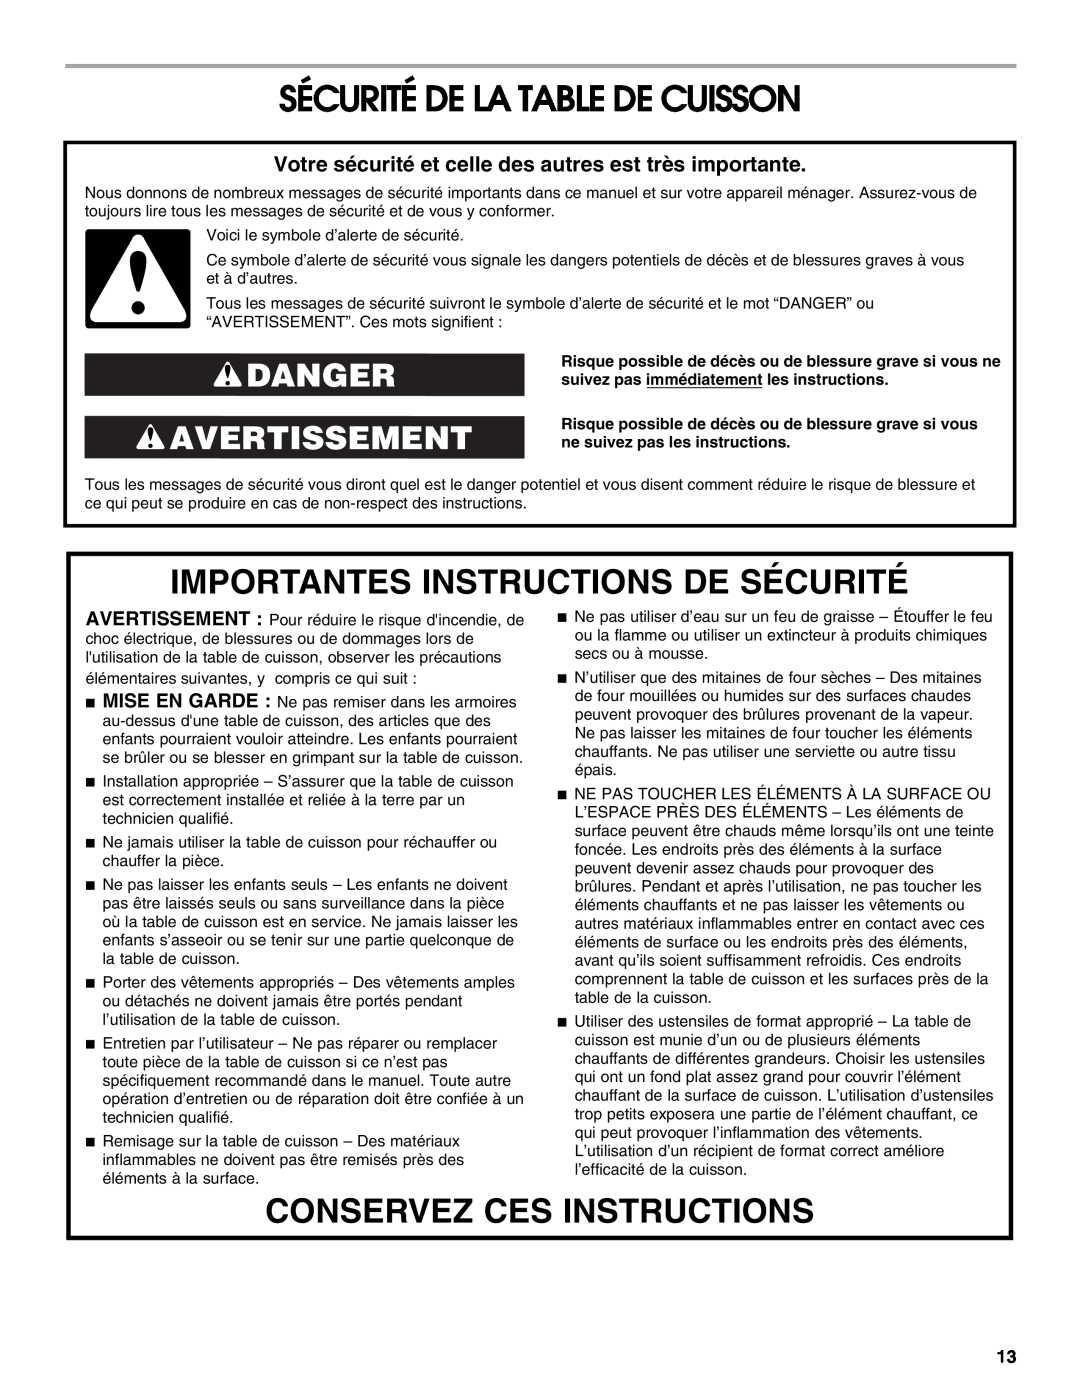 Jenn-Air W10298938A Sécurité De La Table De Cuisson, Importantes Instructions De Sécurité, Conservez Ces Instructions 